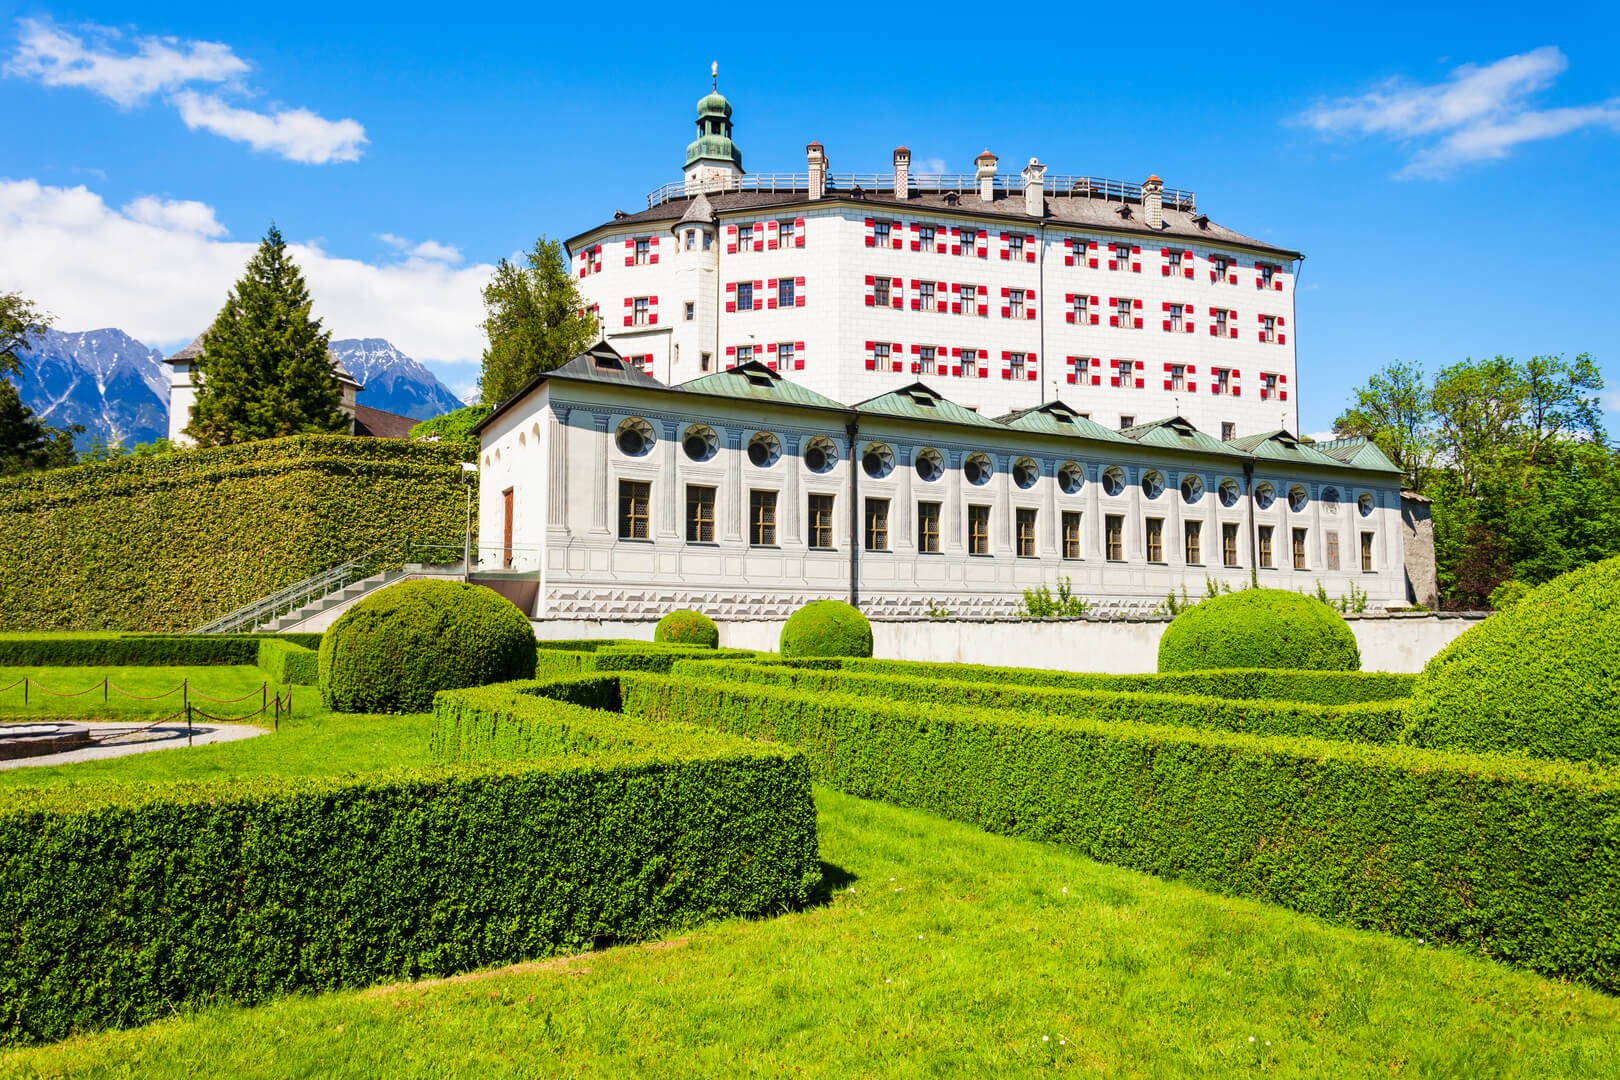 Замок Амбрас или Schloss Ambras Innsbruck - это замок и дворец, расположенный в Инсбруке, столице Тироля, Австрия